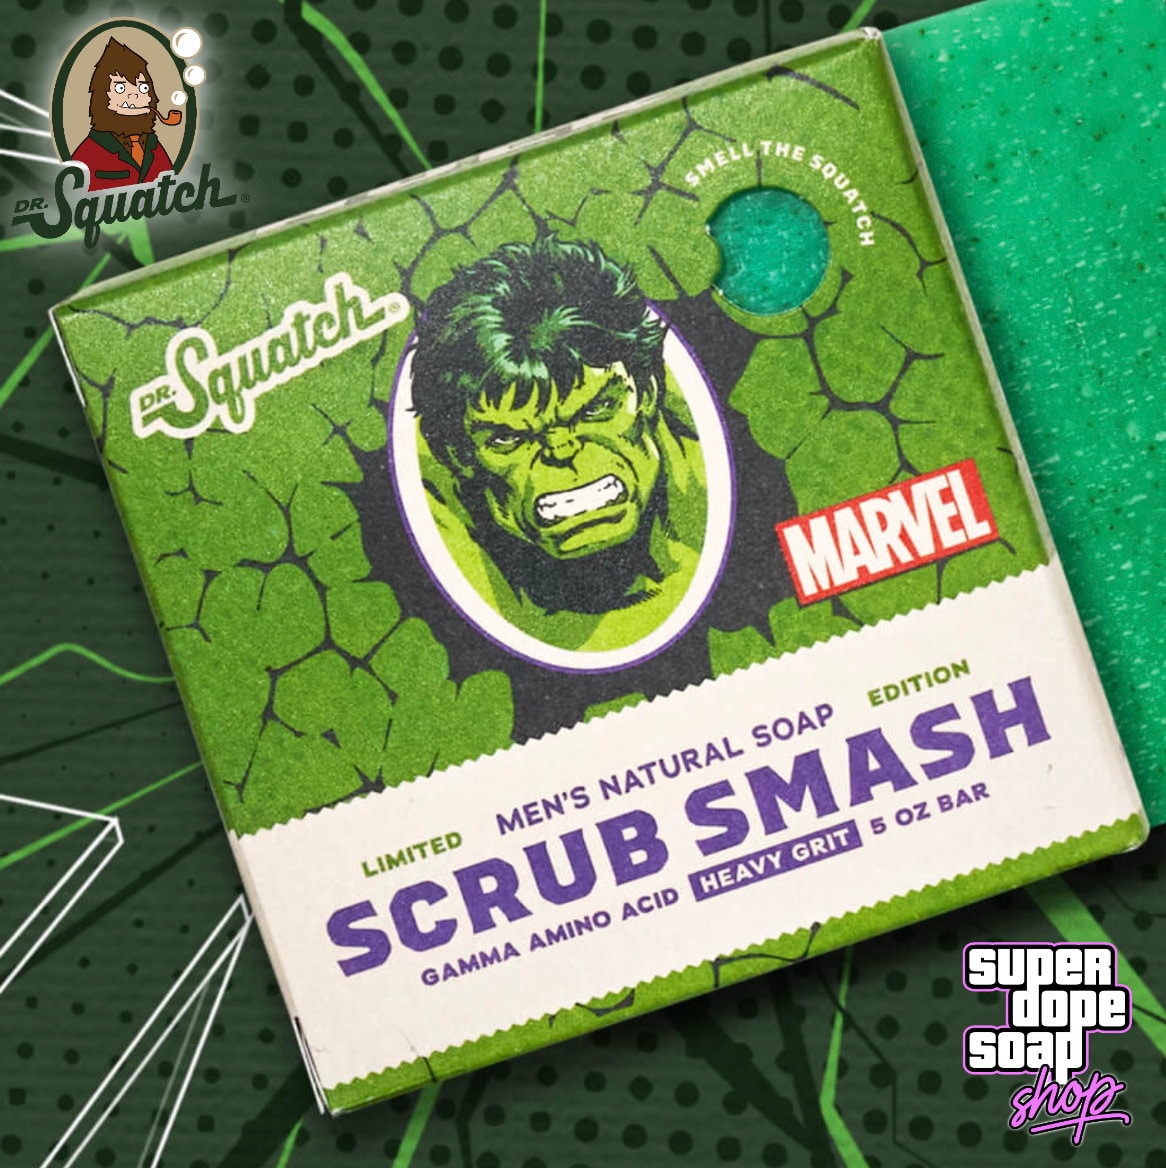 New Dr. SQUATCH hulk Scrub Smash Limited Edition Soap Bar Includes